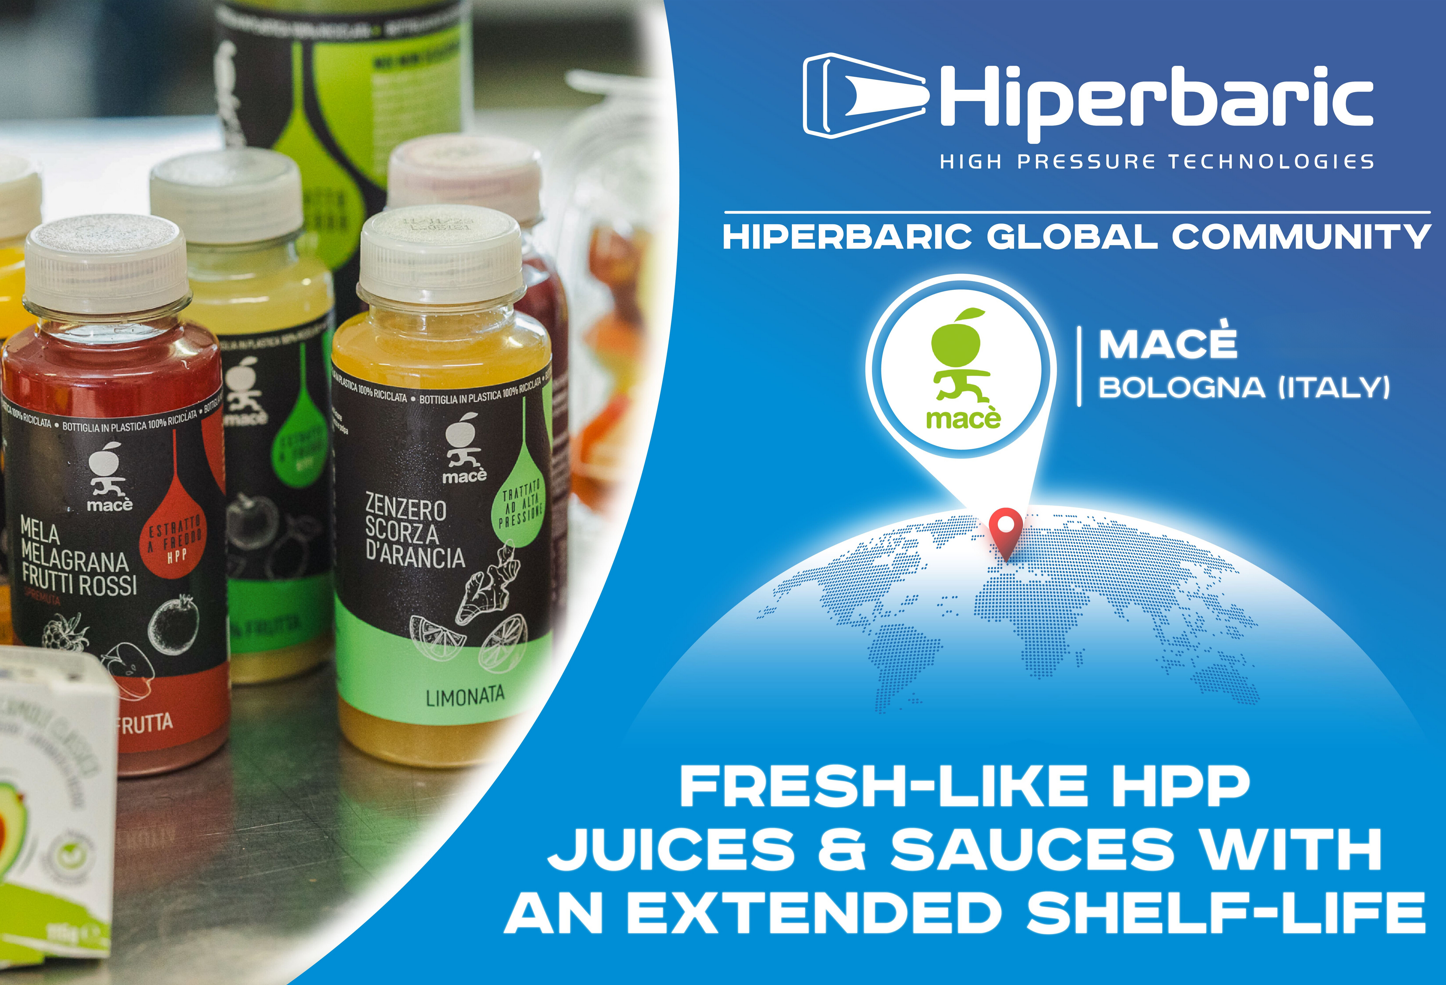 Mac et Hiperbaric s'associent avec la technologie HPP pour stabiliser les jus de fruits et les sauces fraches